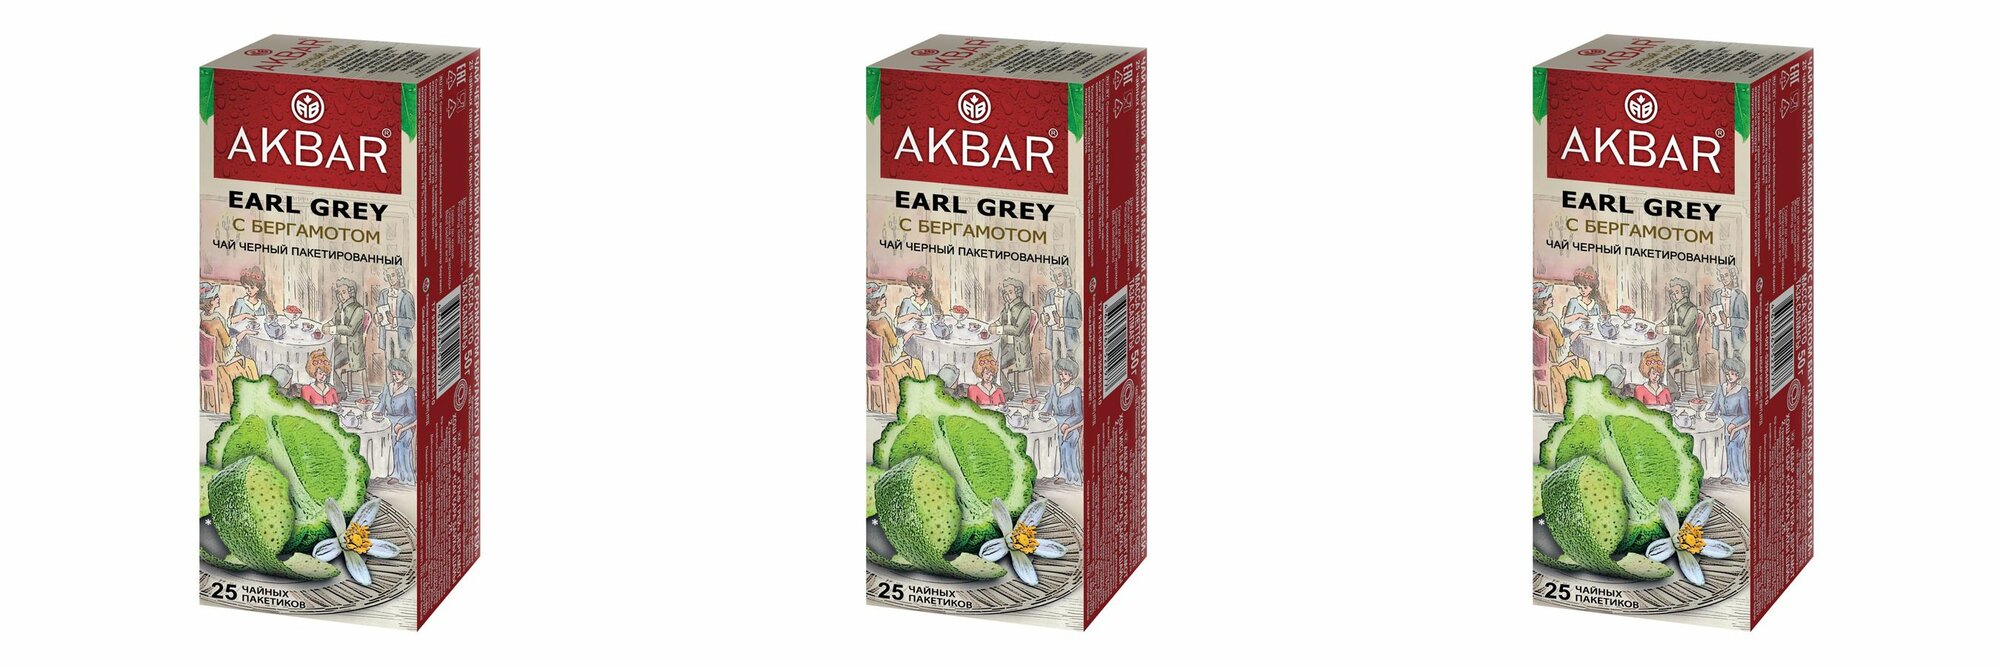 Akbar Чай в пакетиках Граф Грей черный байховый мелкий с ароматом бергамота, 25 пак х 2 г, 3 уп